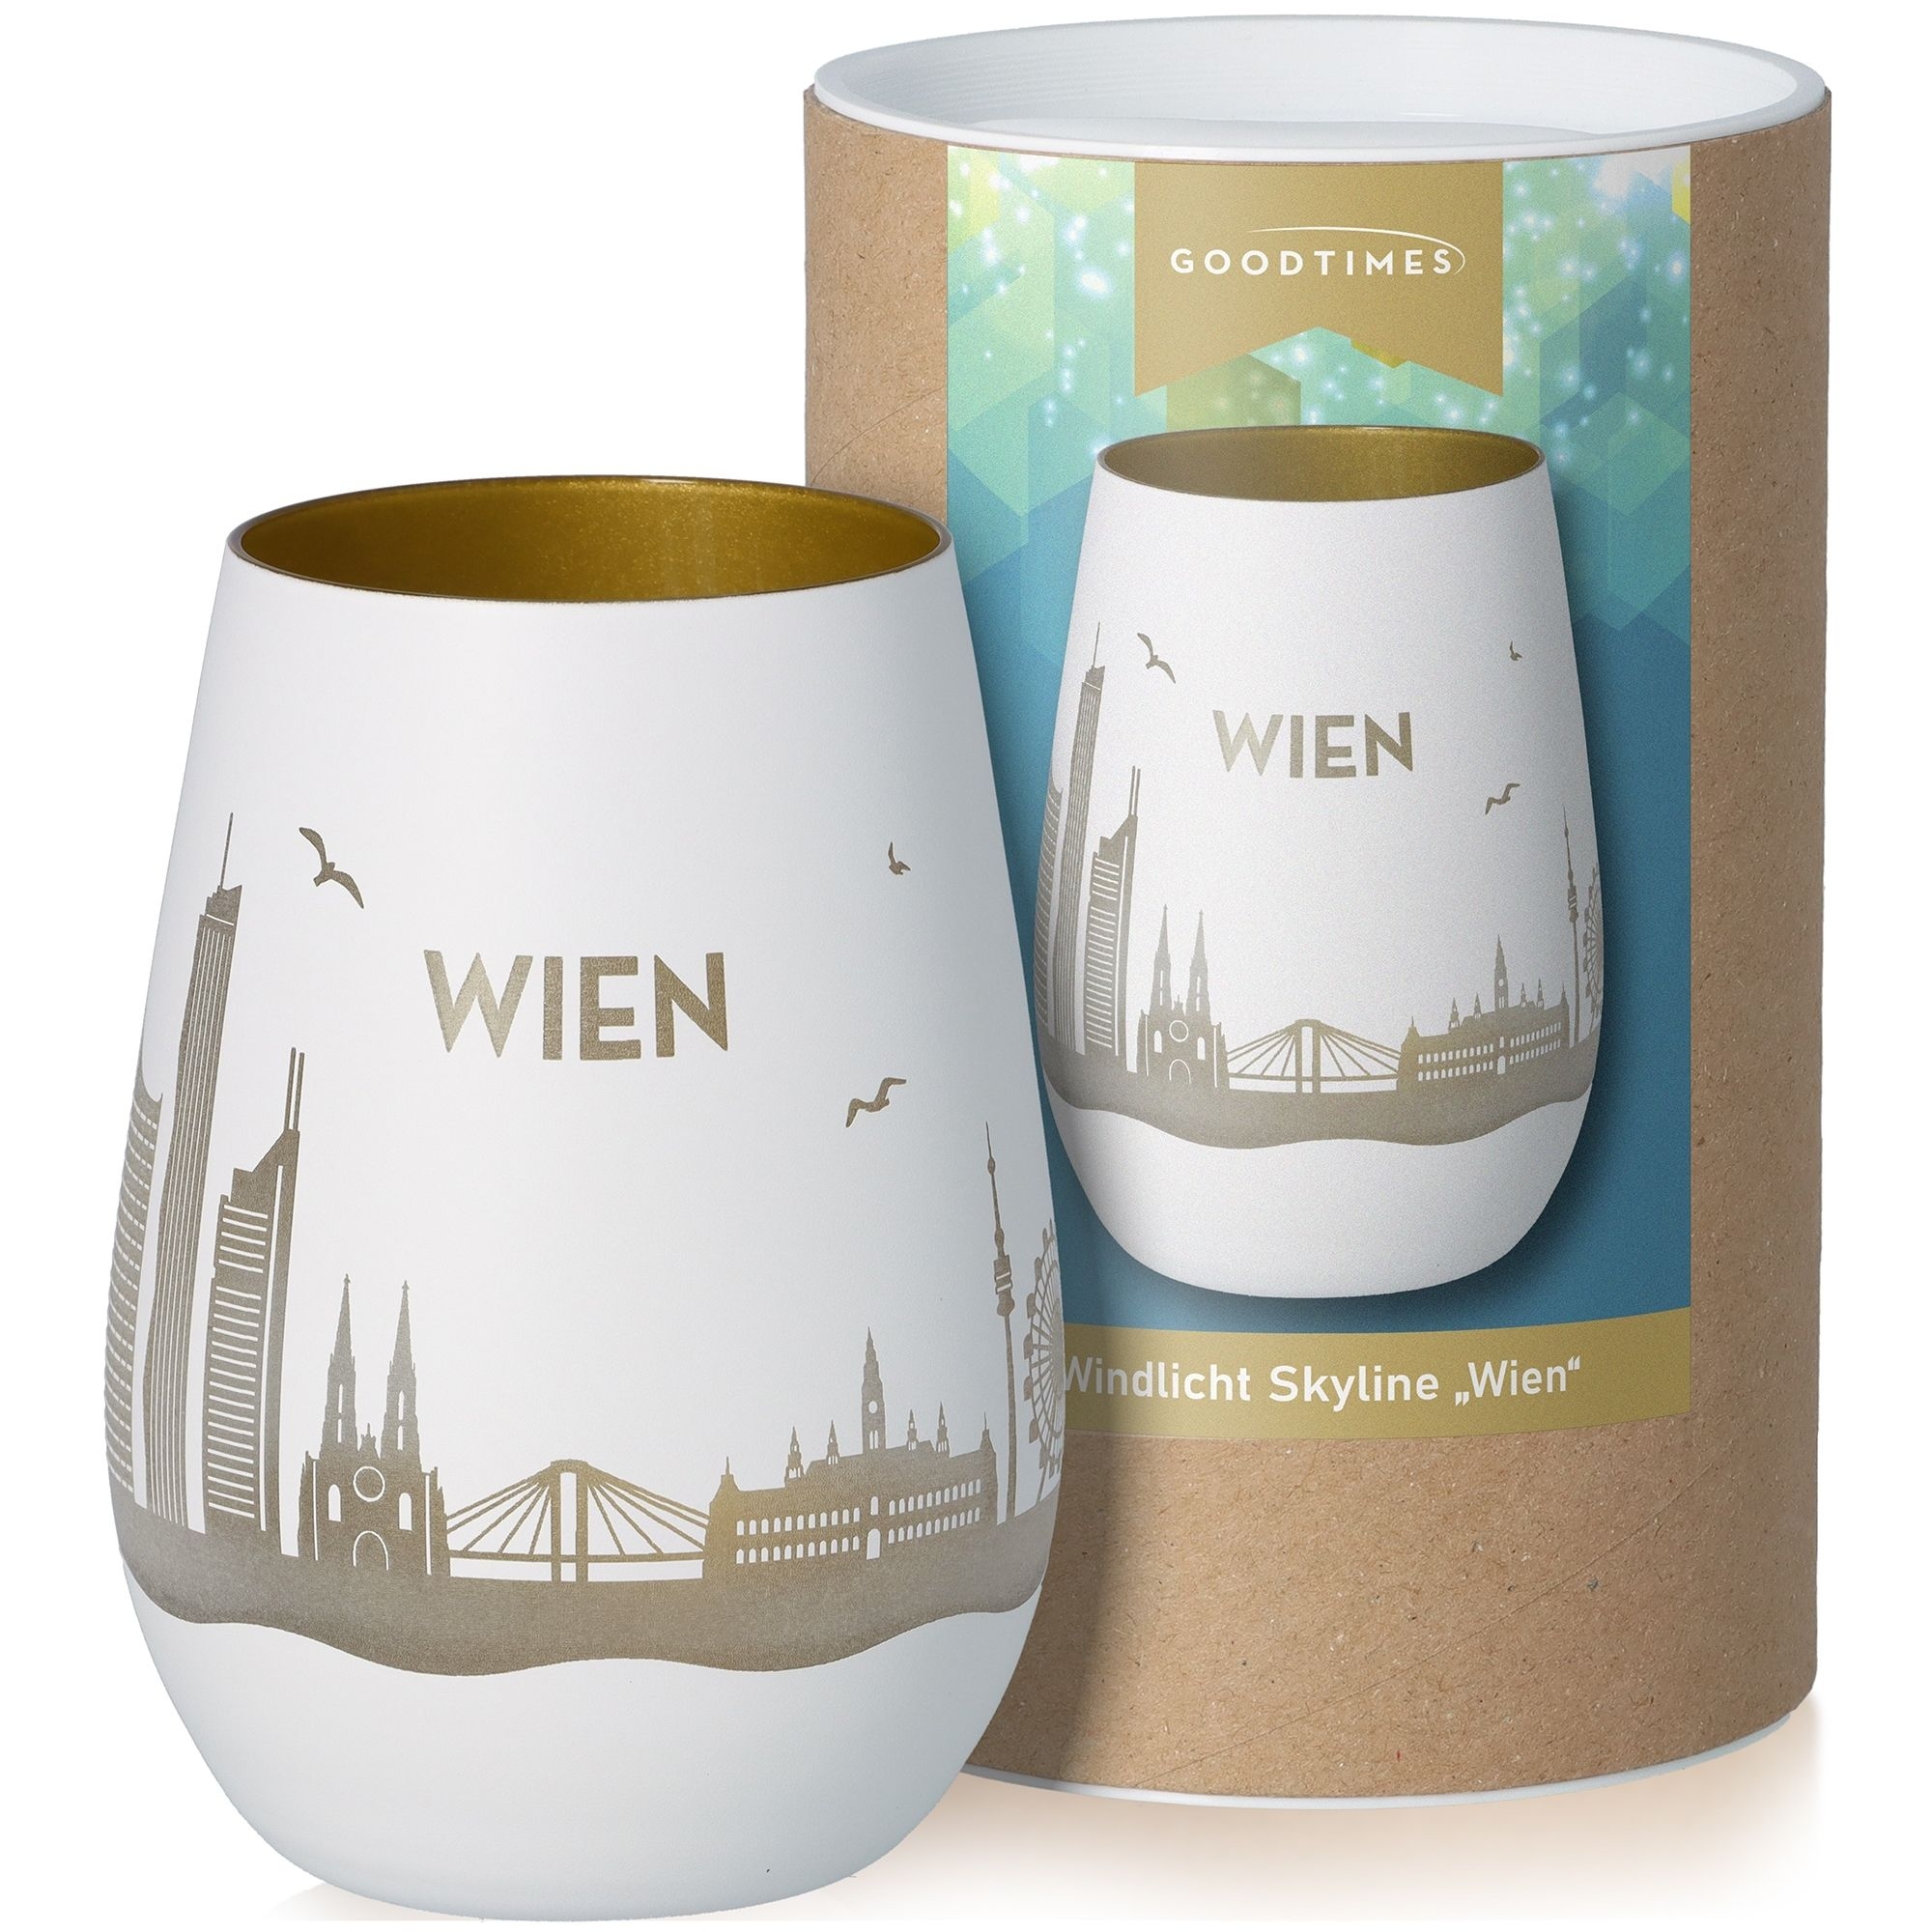 Windlicht Skyline Wien Weiß/Gold